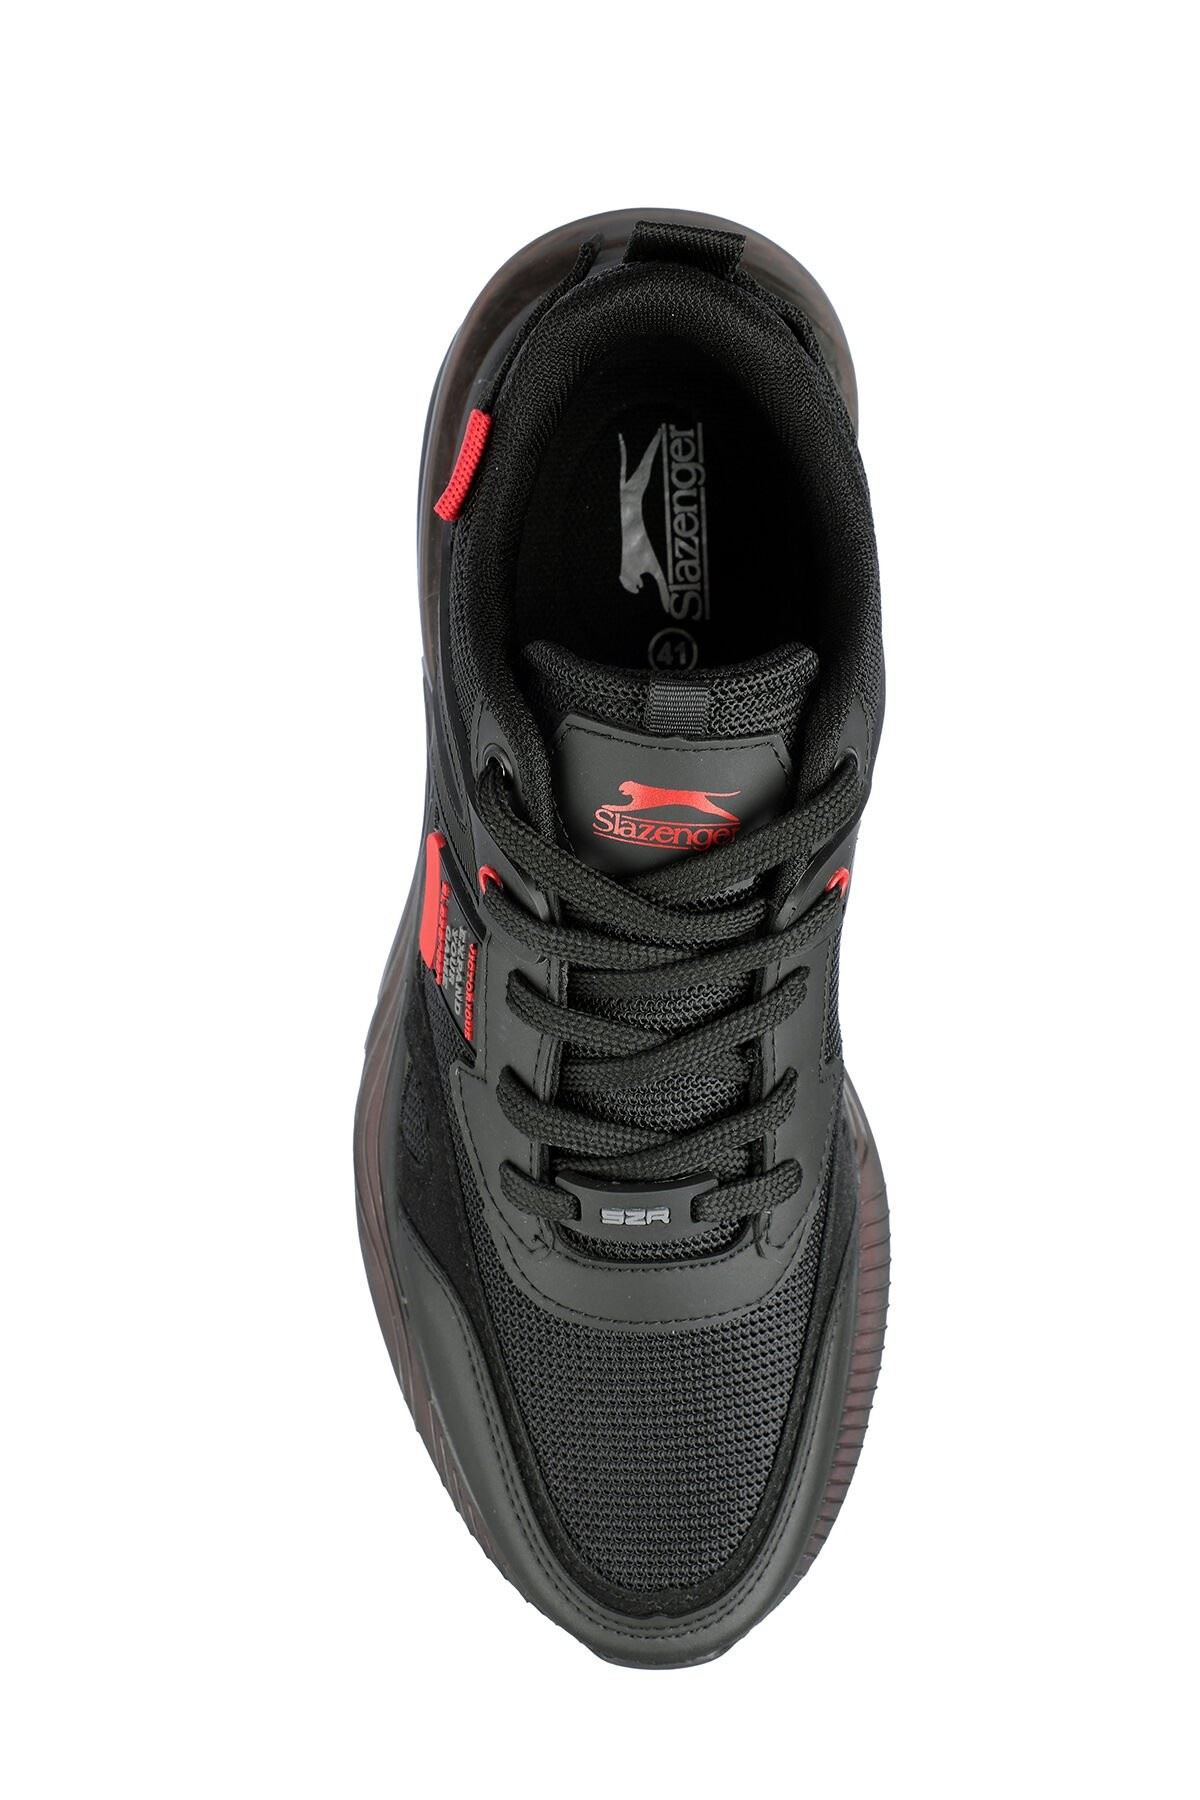 Za - Run Slazenger Erkek Siyah Spor Ayakkabı - SA22RE052-506